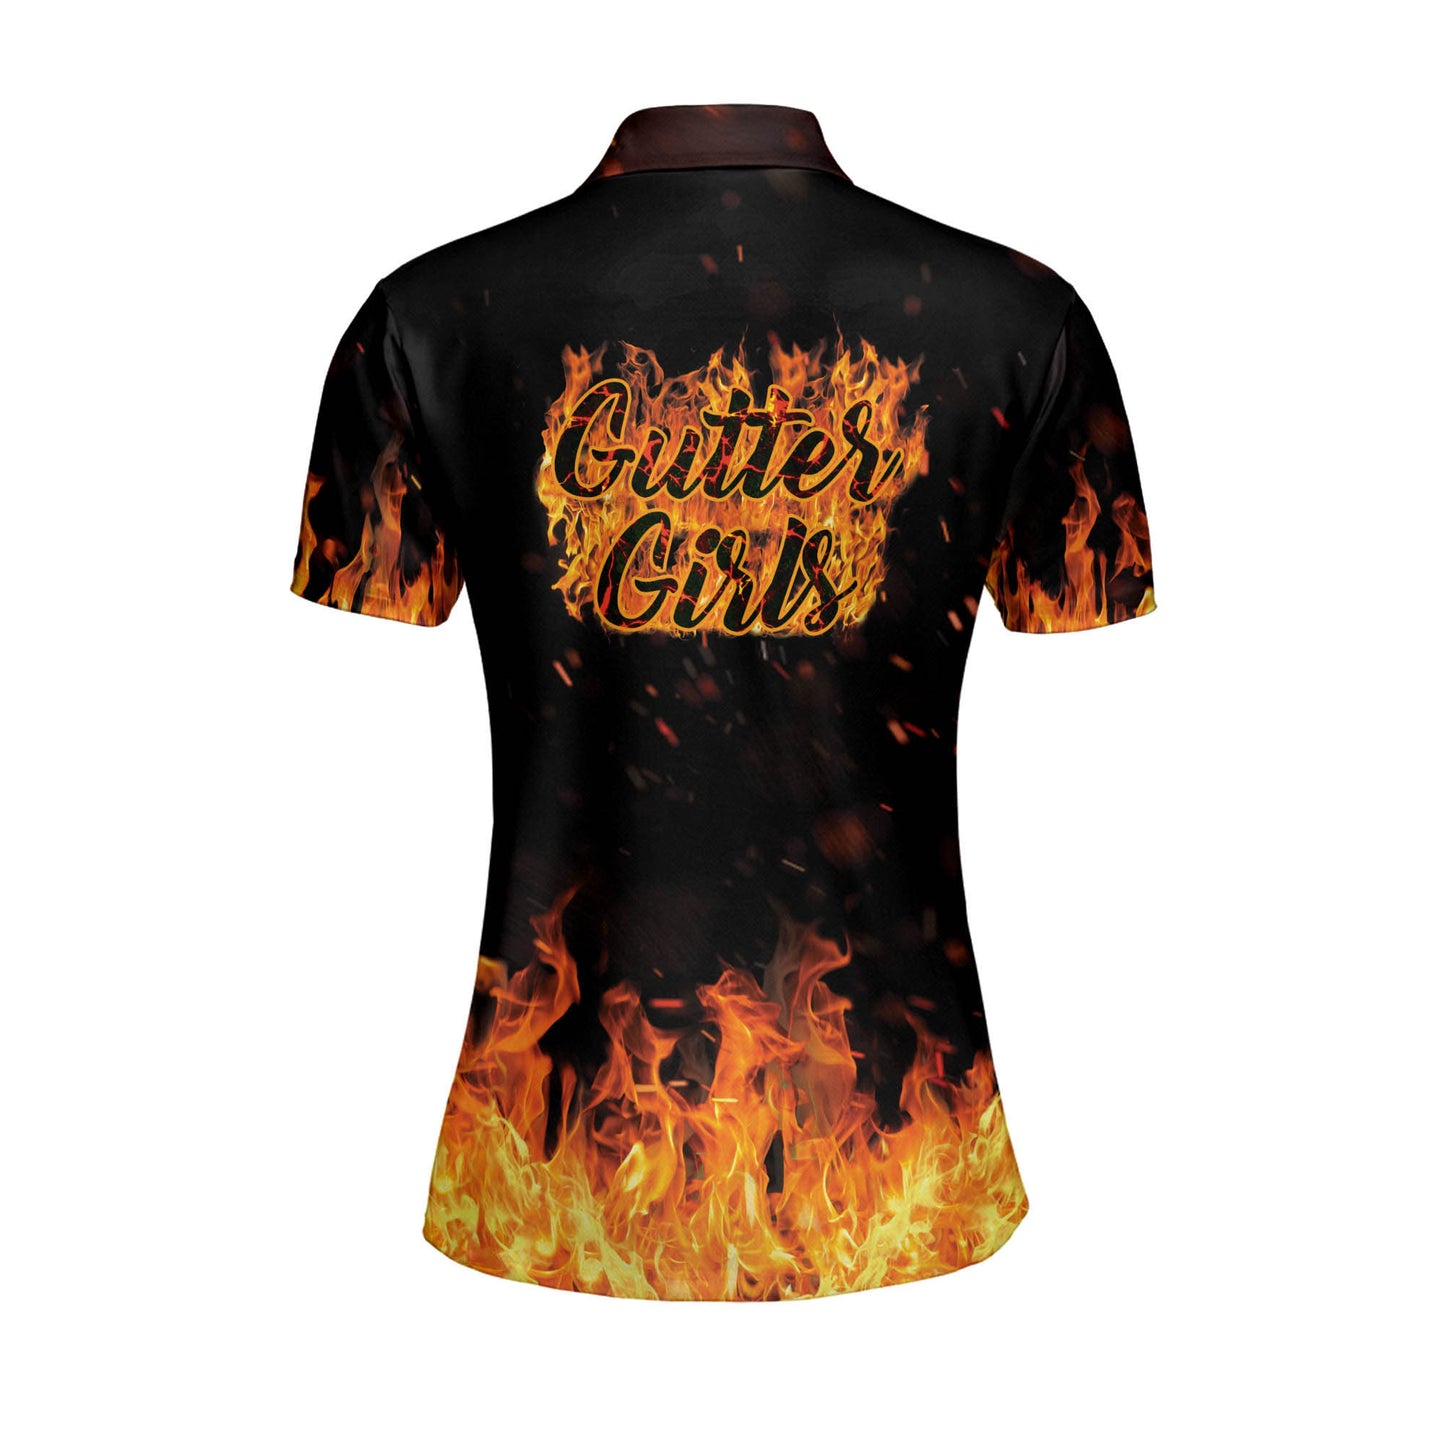 Custom Gutter Girls Fire Bowling Shirt BW0046